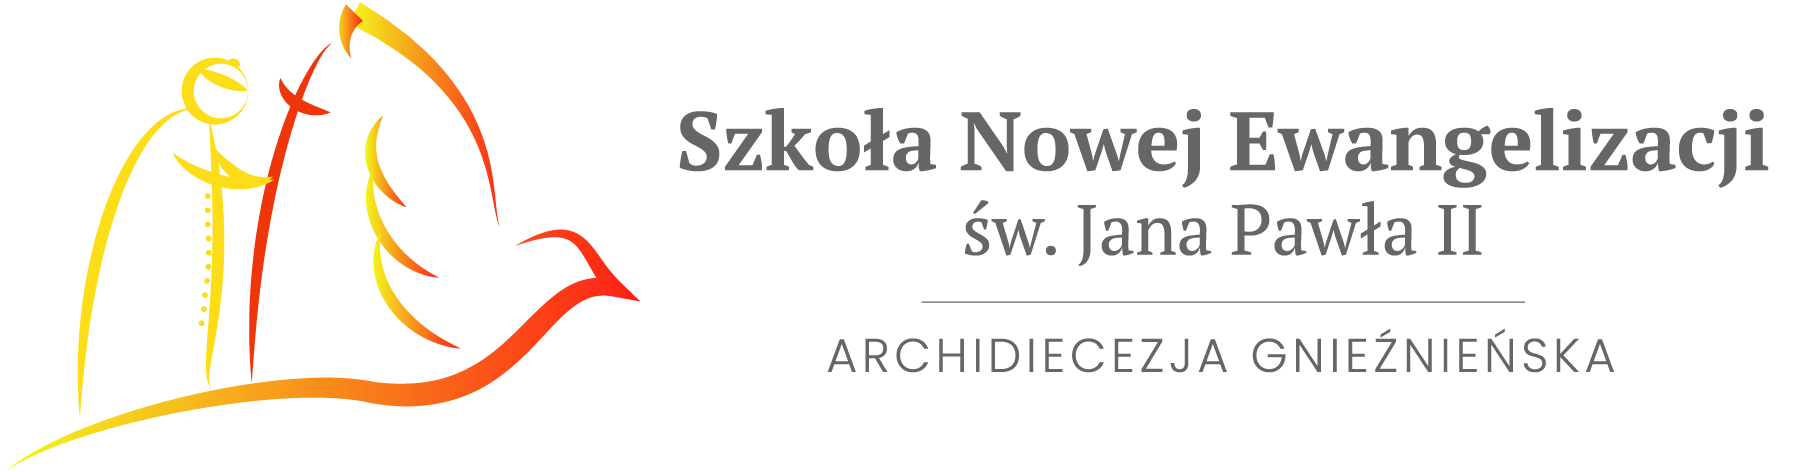 Szkoła Nowej Ewangelizacji Św. Jana Pawła II w Inowrocławiu